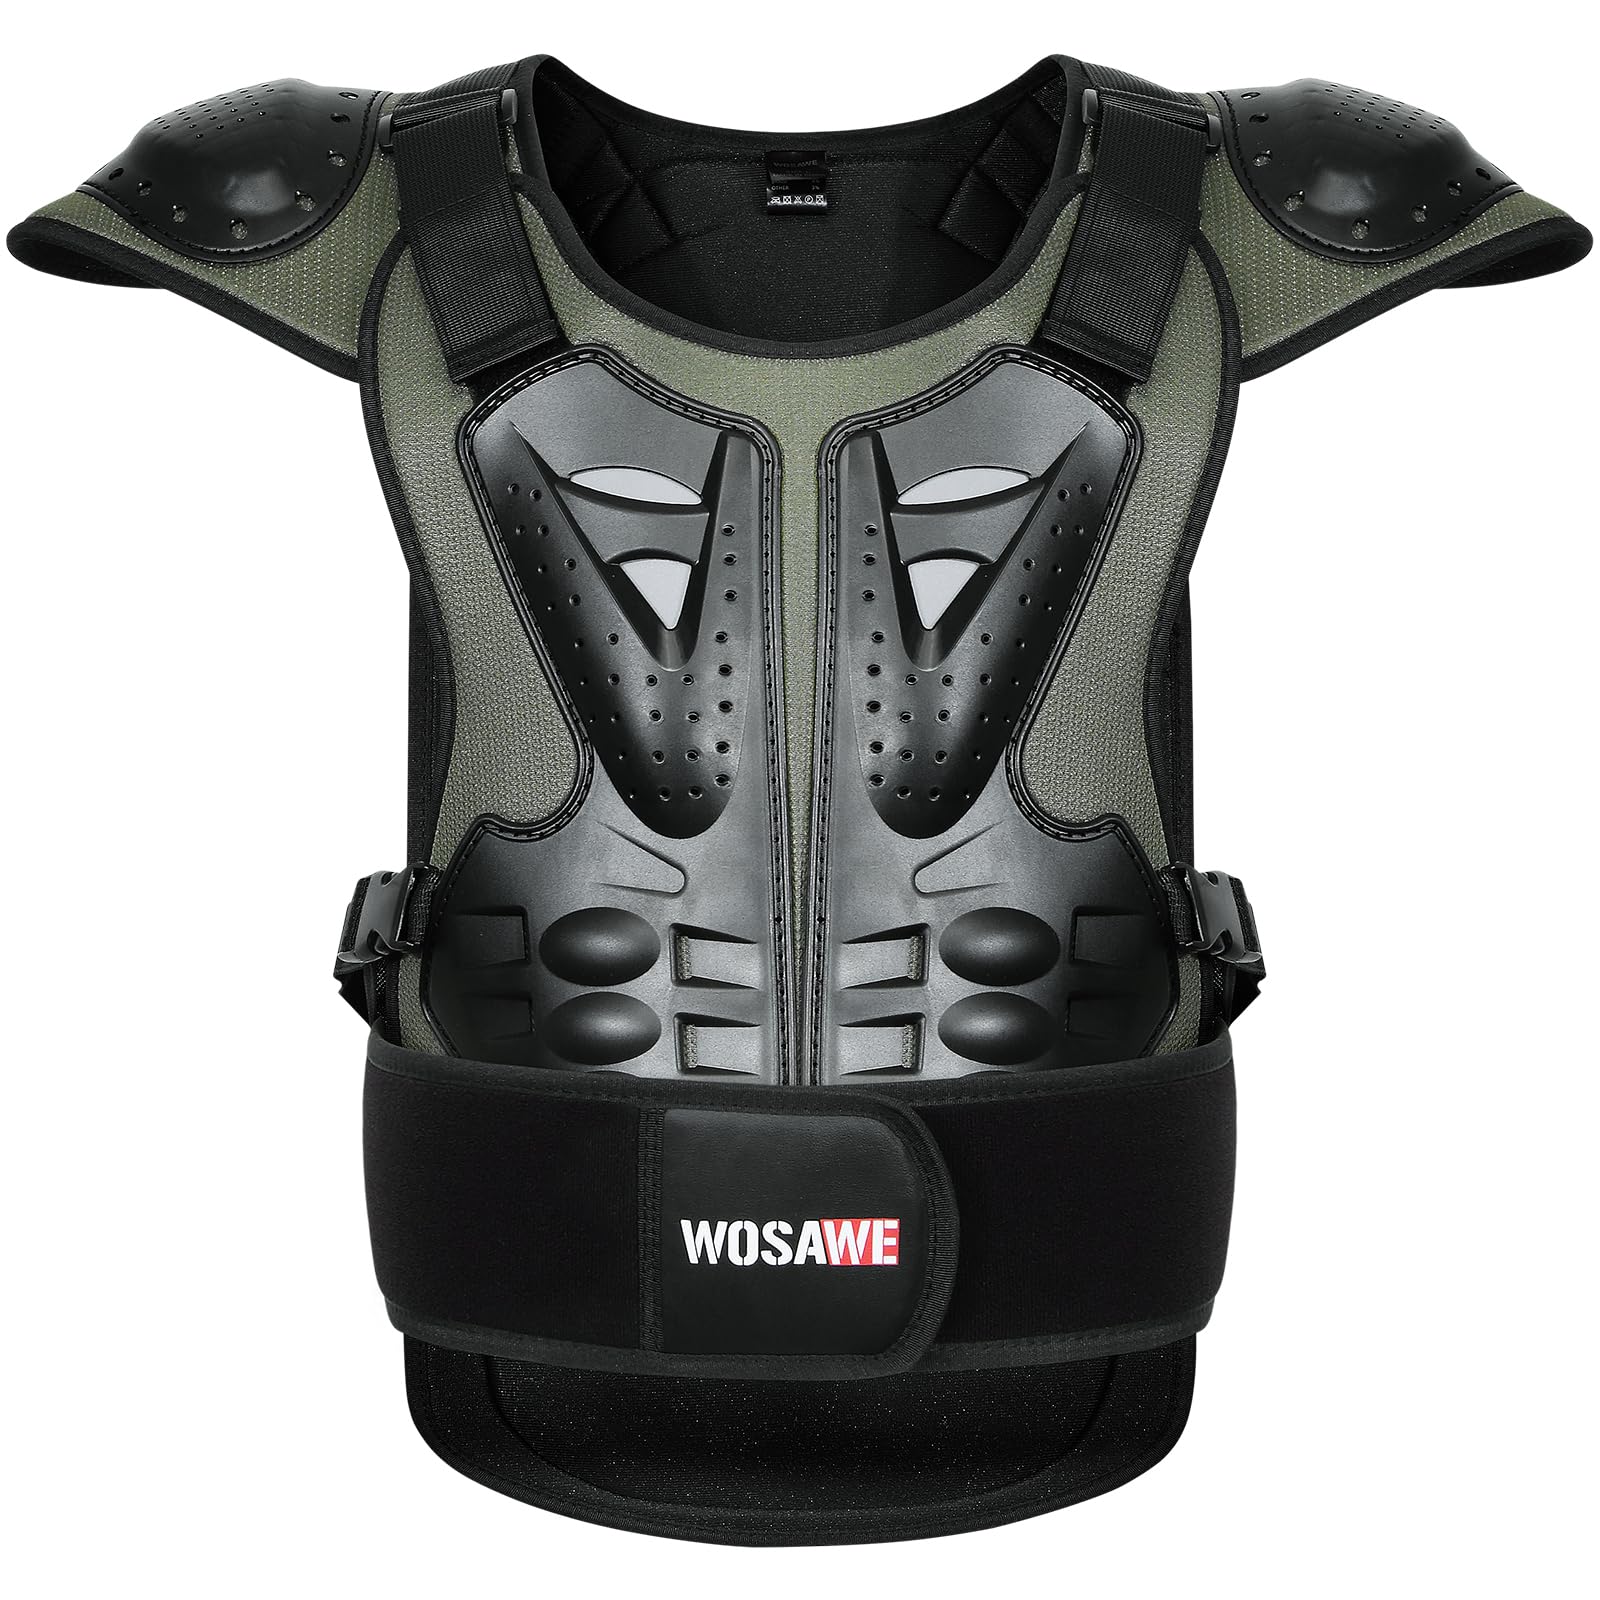 WOSAWE Motorrad Schutz Jacke für Erwachsene, Brustpanzer Racing Guard Rückenprotektoren Schutzausrüstung für Riding Skating Roller Skifahren Snowboard (15 Grün, L) von WOSAWE